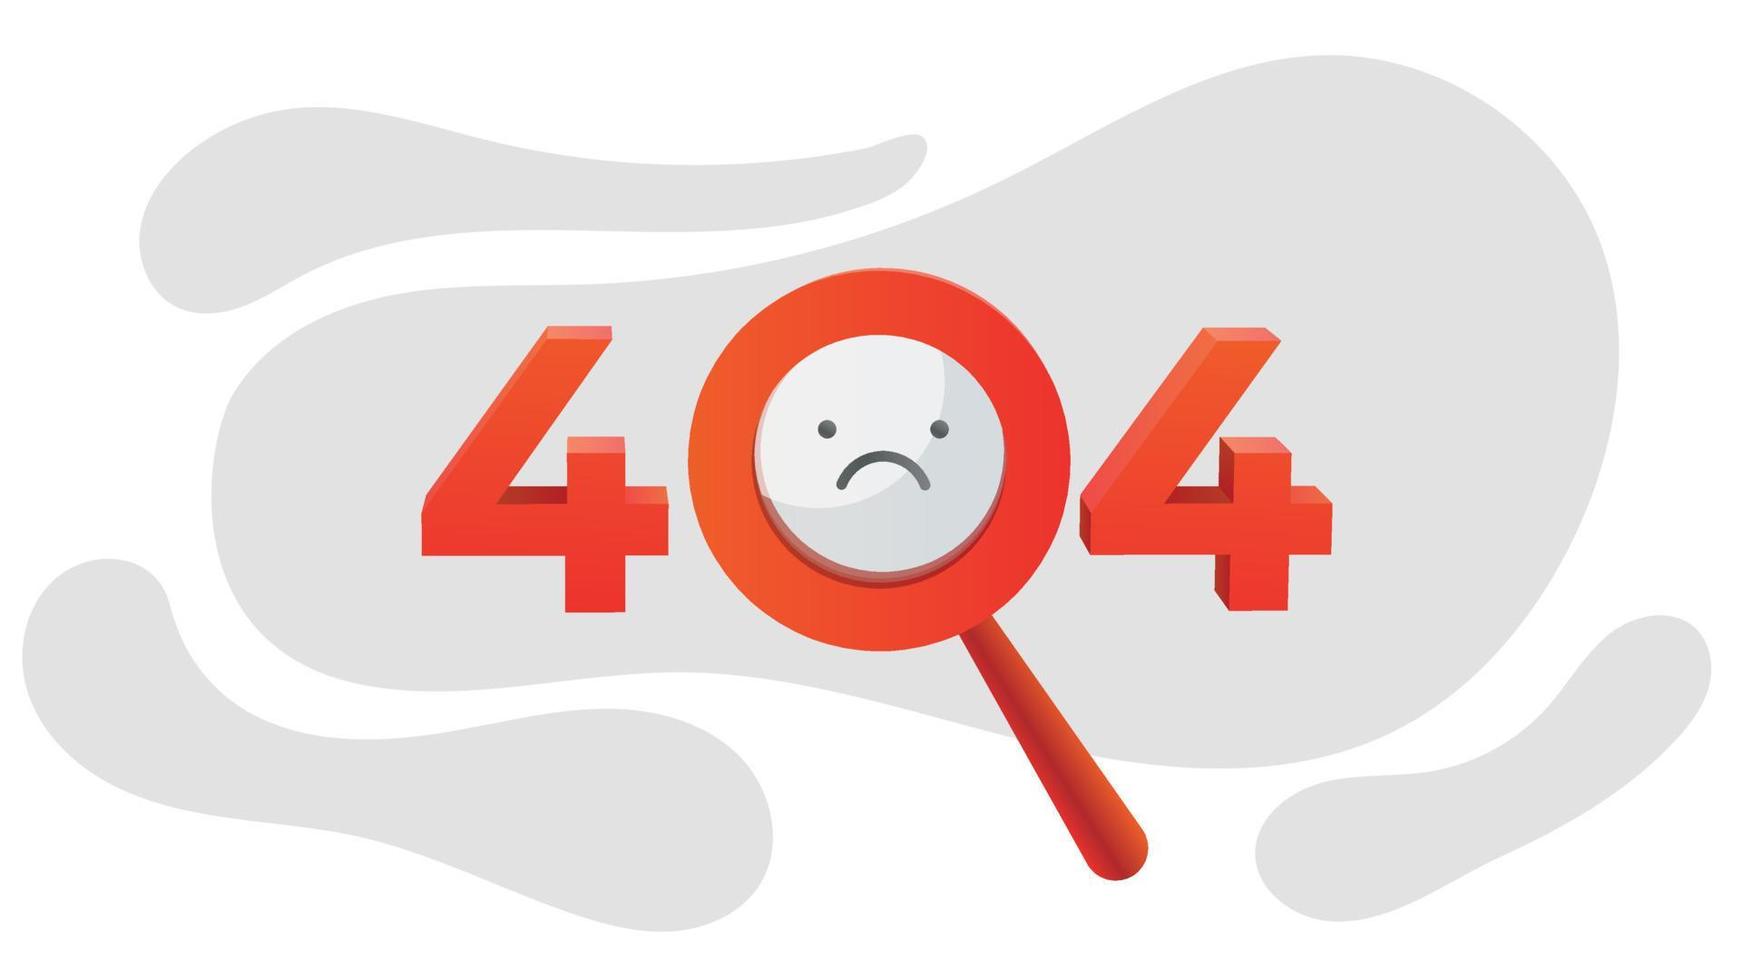 error 404 página no encontrada ilustración del concepto. diseño creativo de error de página web. elemento gráfico moderno para página de destino, infografía, icono vector